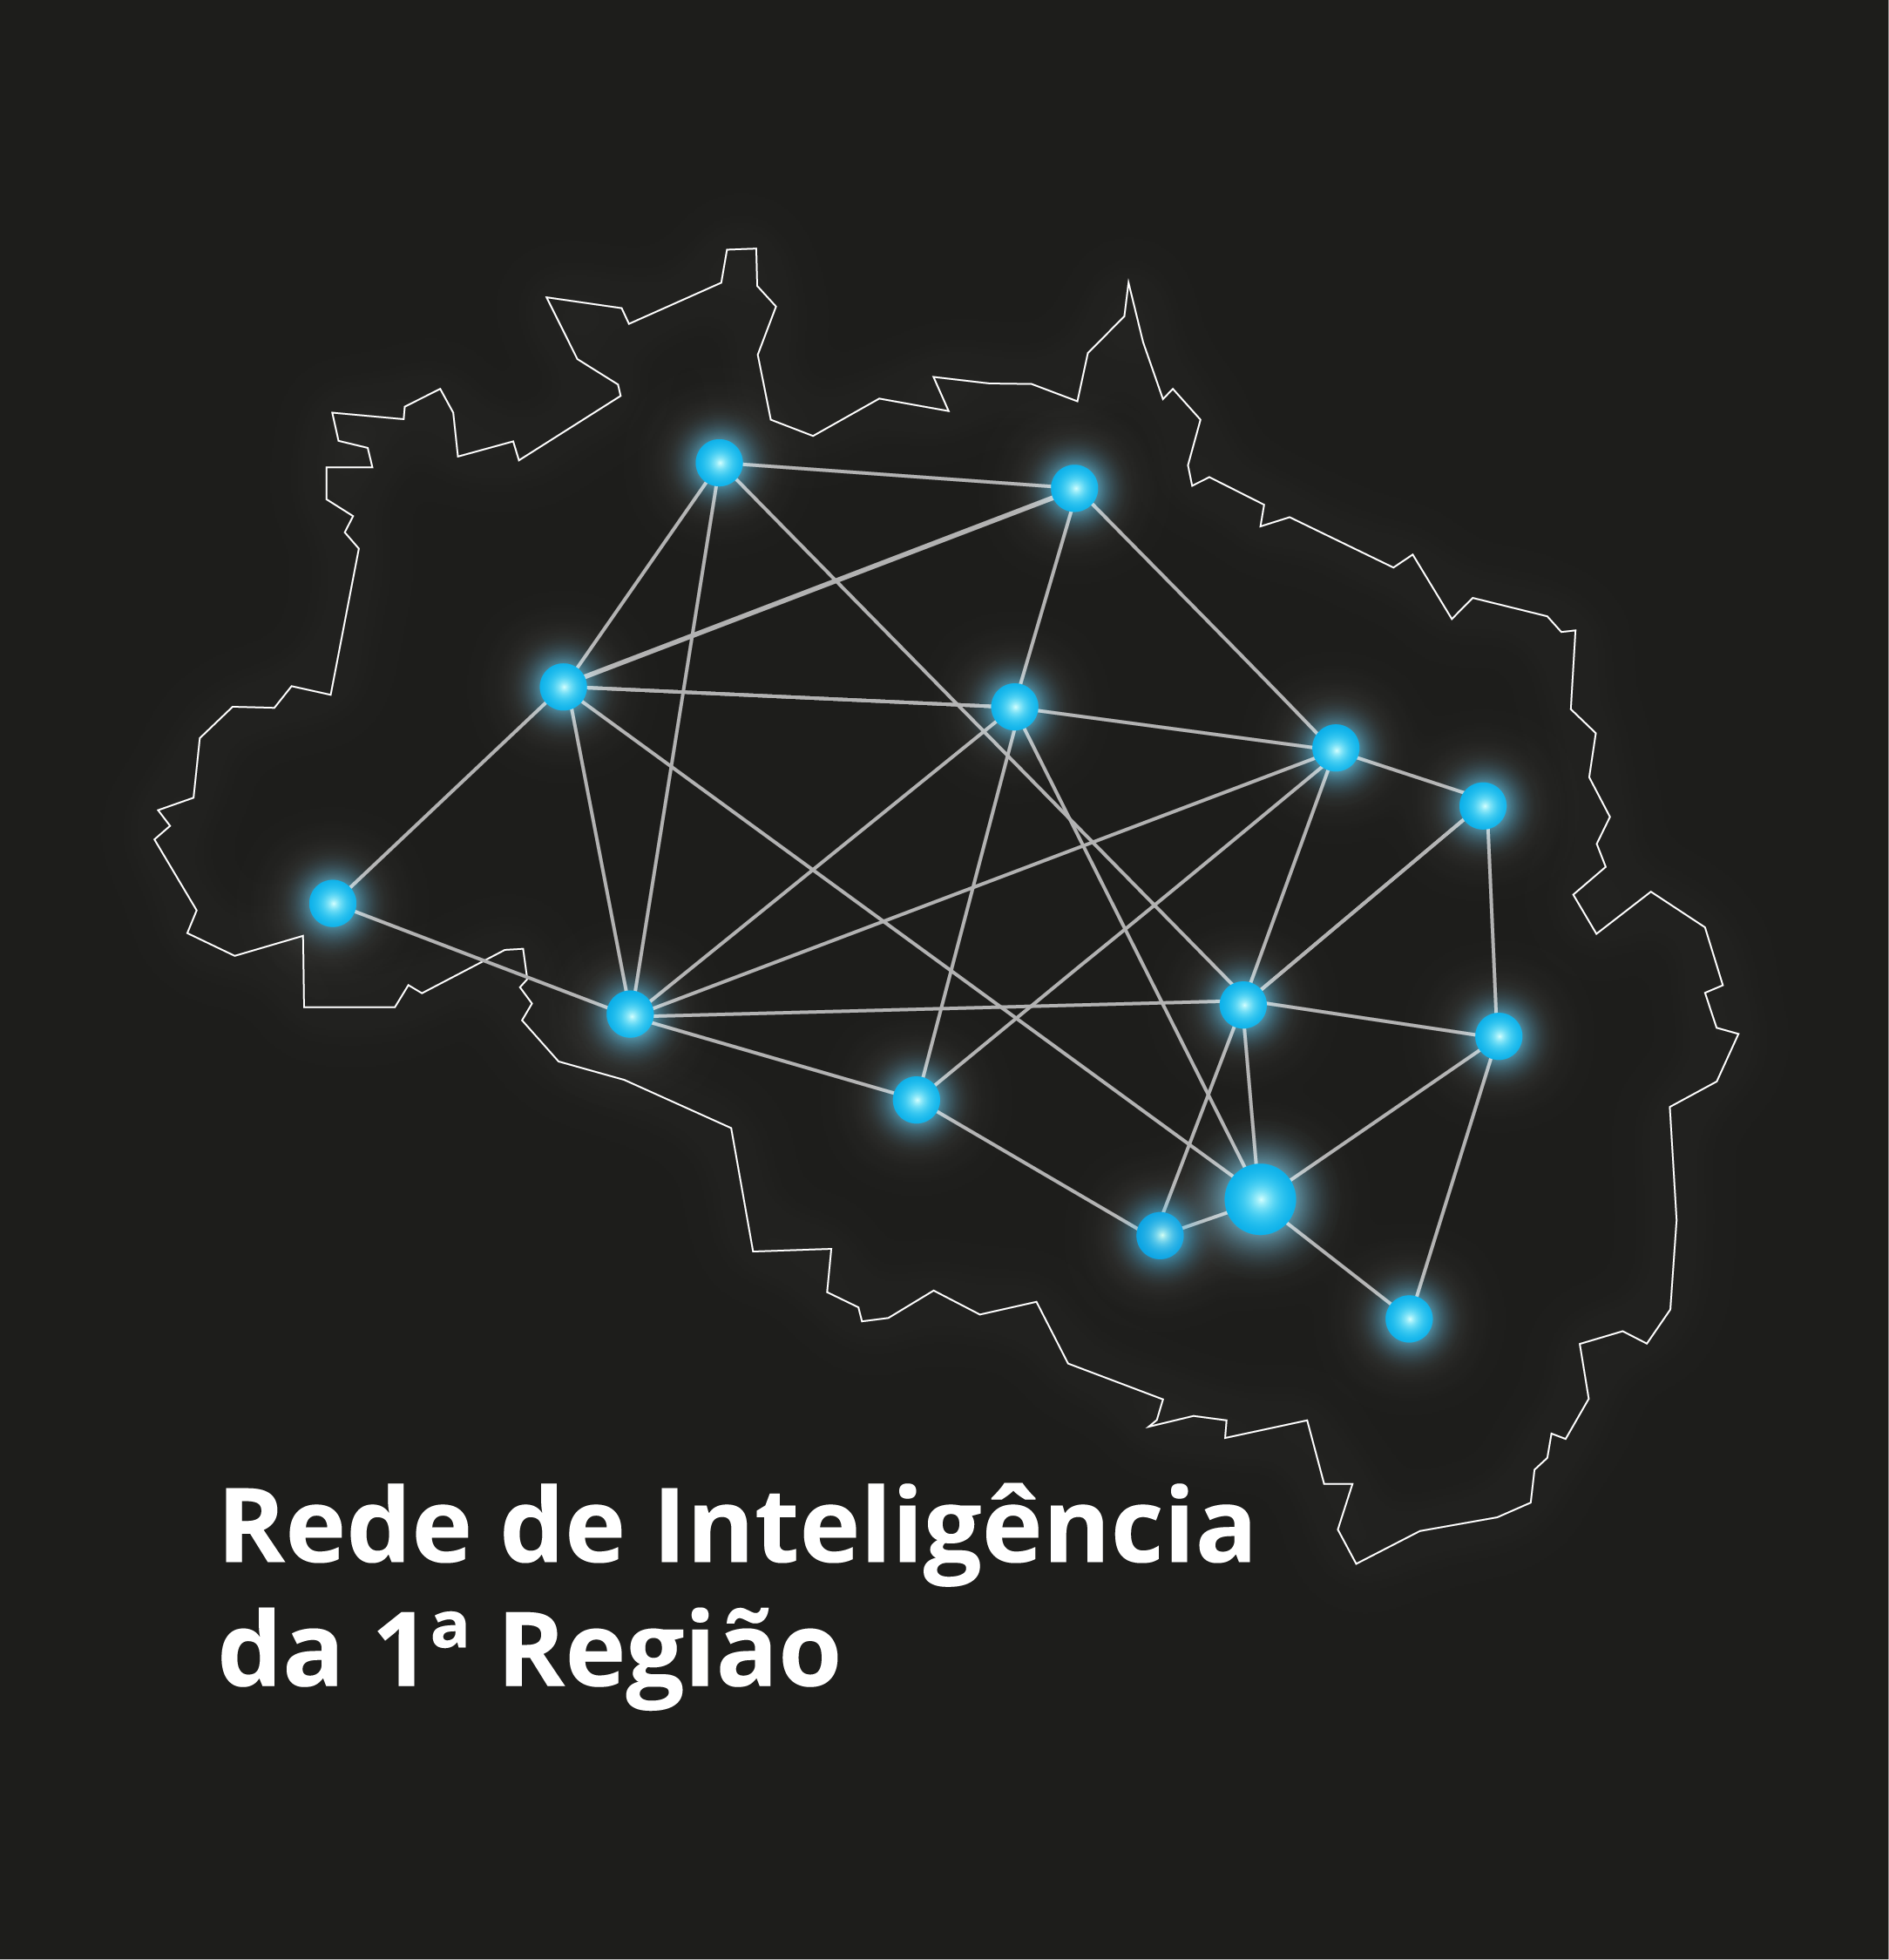 INSTITUCIONAL: Rede de Inteligência da 1ª Região amplia discussão de temas relevantes para o cidadão